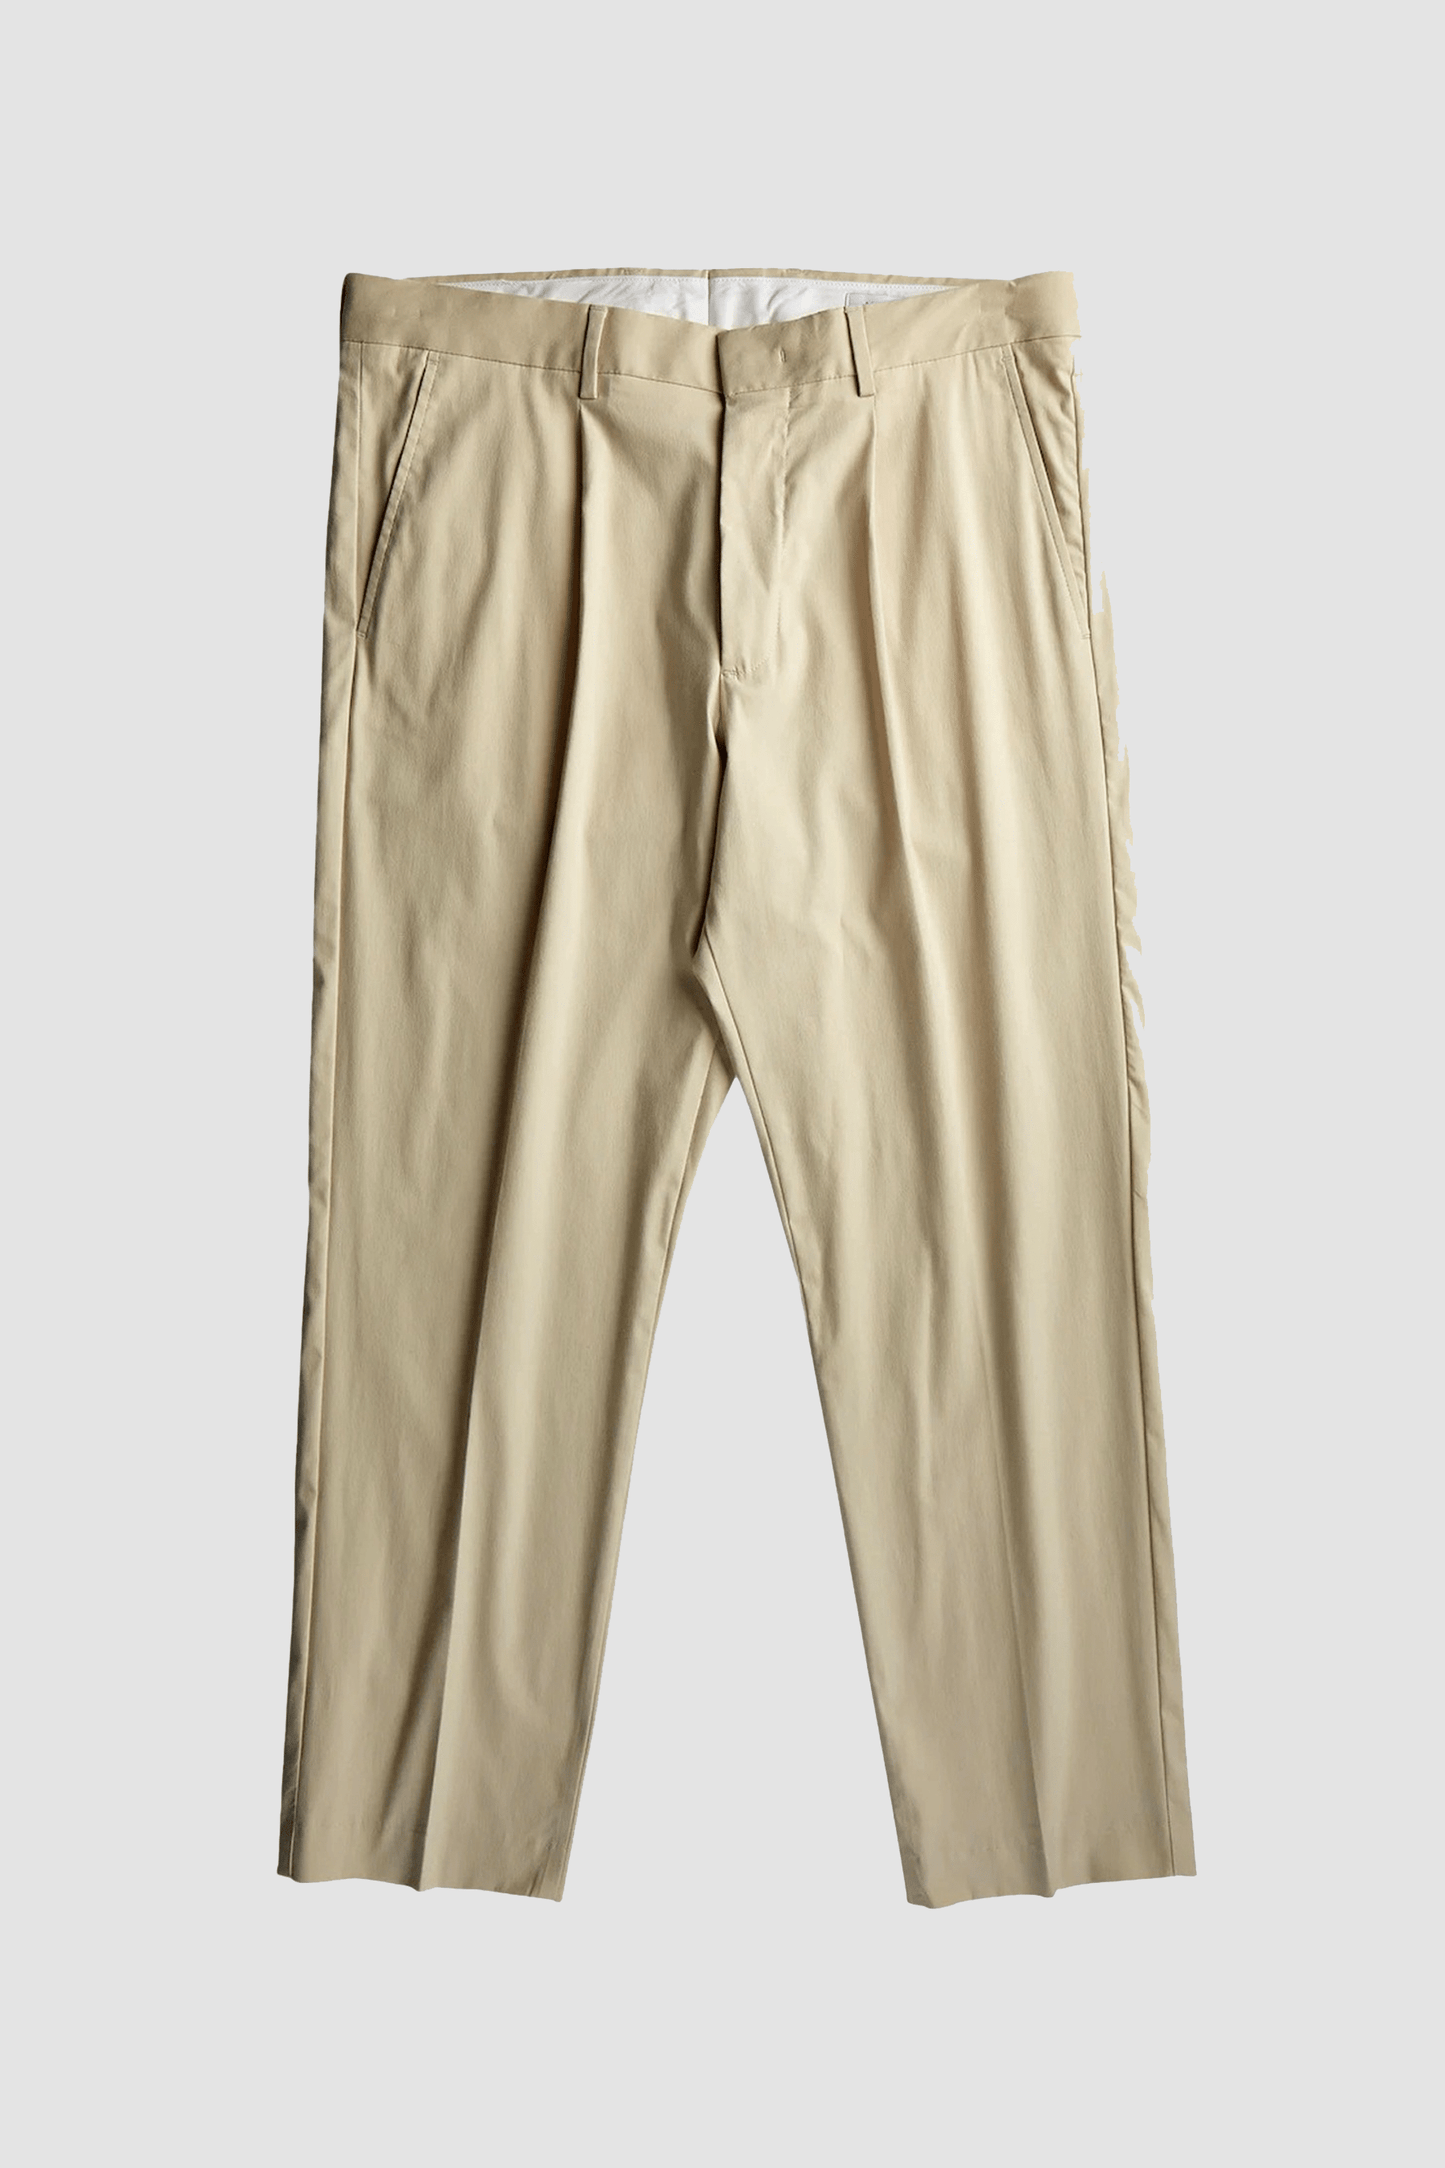 NN07 Pantalons Ecru / W29 / L32 Pantalon NN07 - Tapered leg Trouser Bill 1680